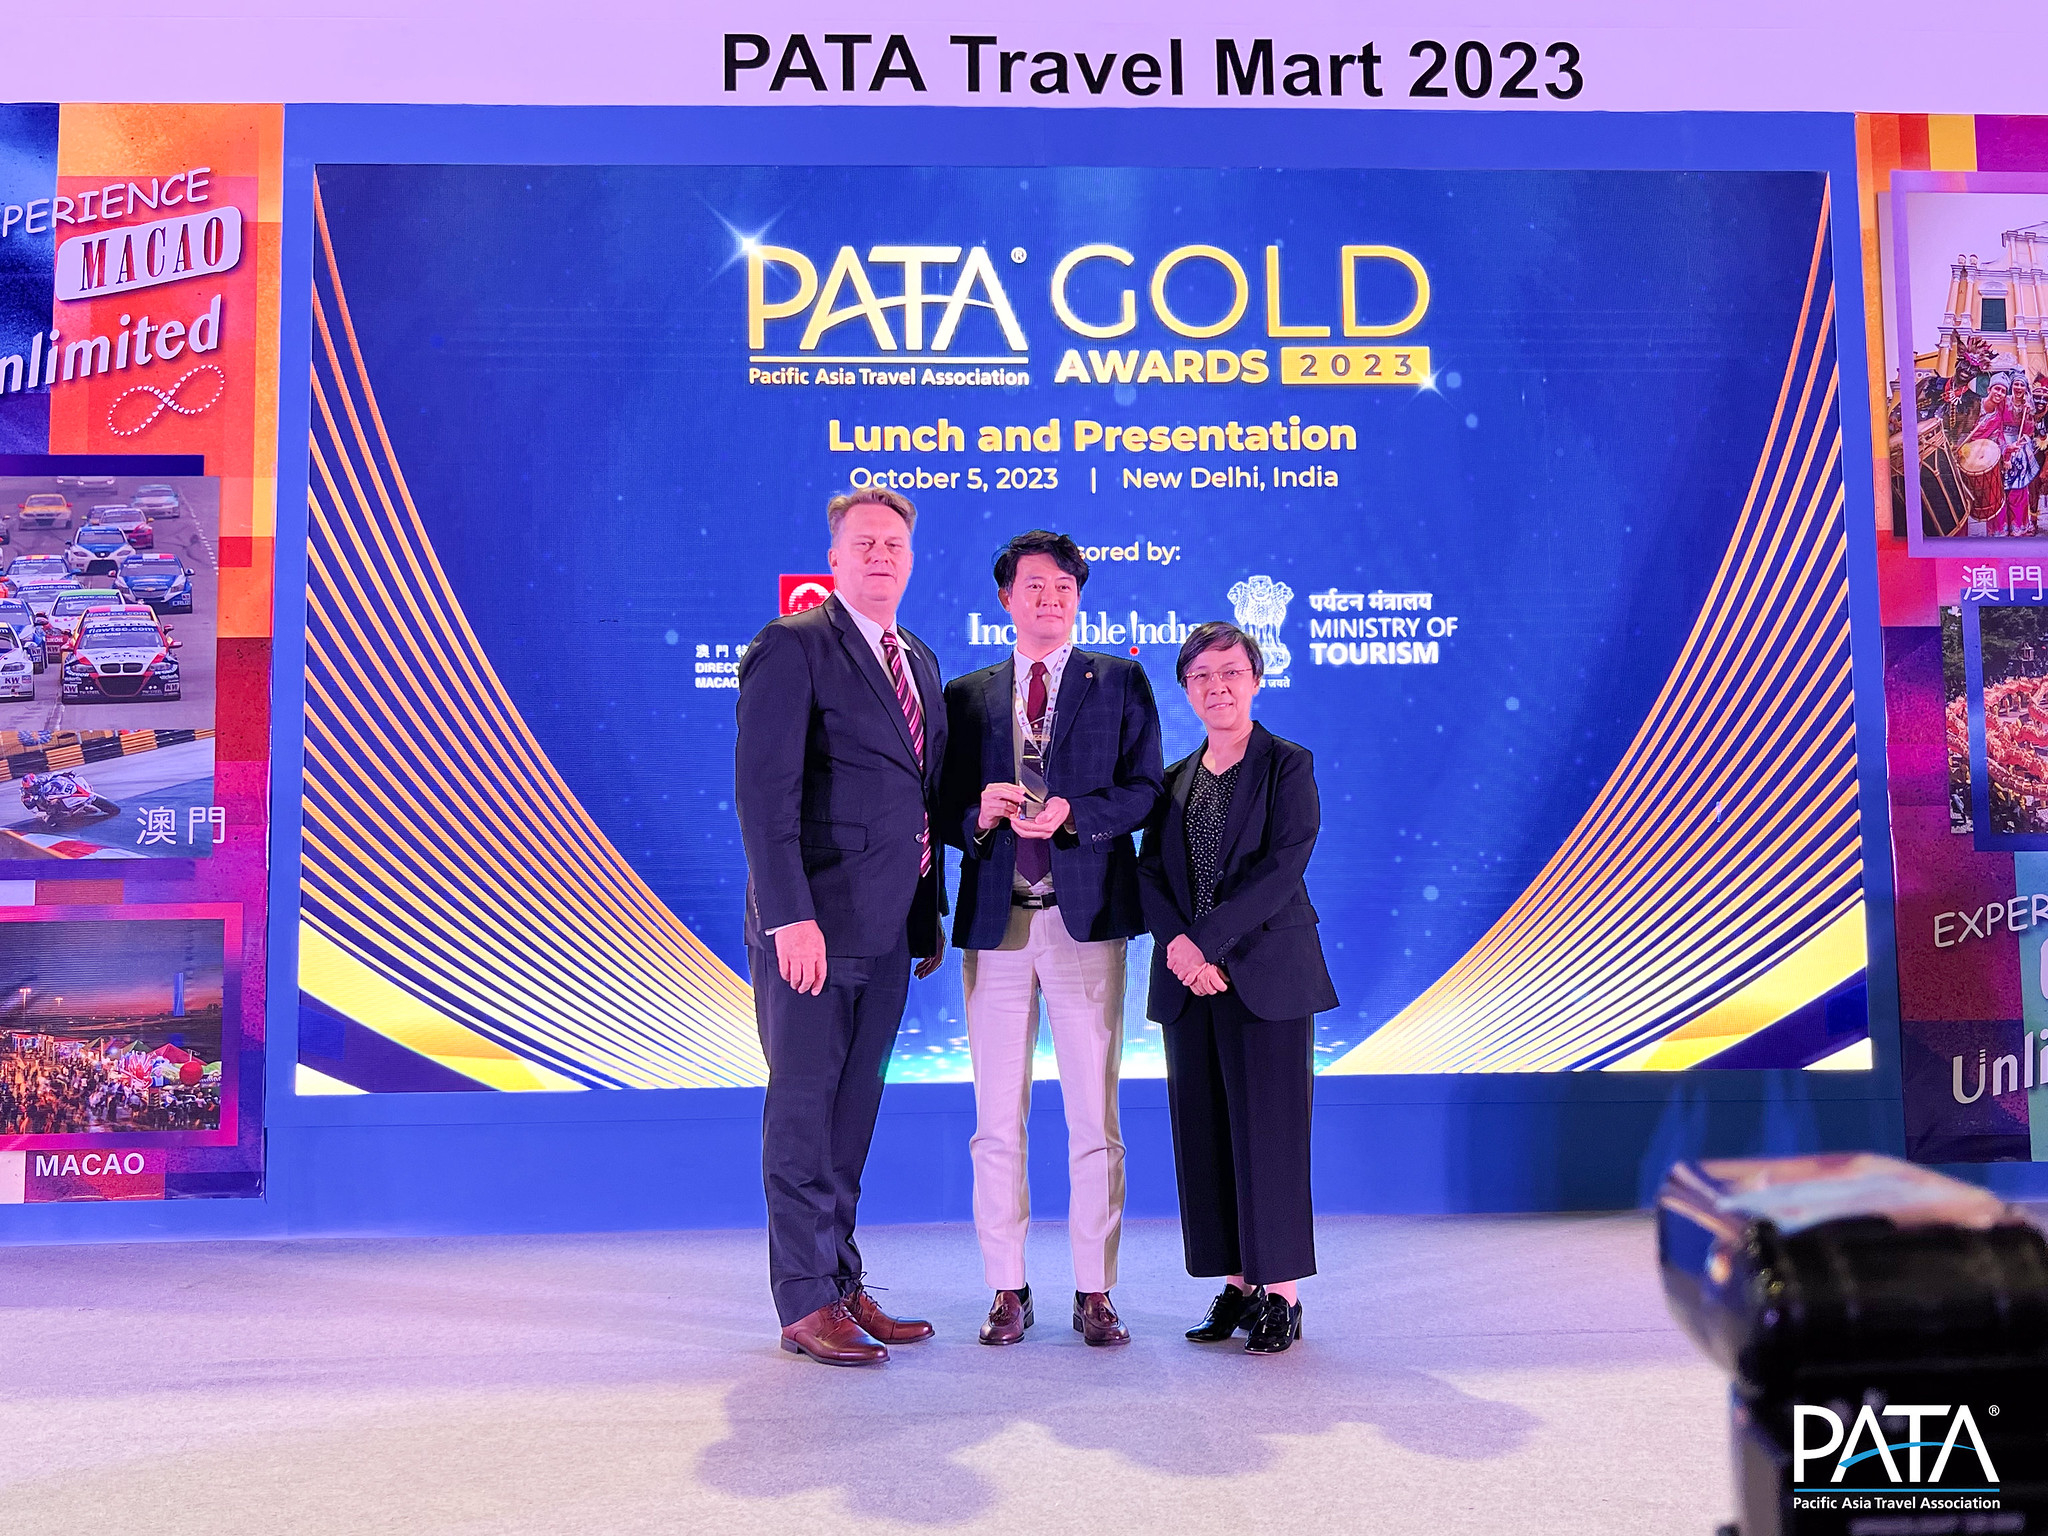 신현철(가운데) 제주관광공사 지역관광그룹장이 지난 5일 인도 뉴델리에서 개최된 파타 골드 어워즈 2023(PATA Gold Awards 2023)에서 지역 기반관광 부문 골드 어워즈를 수상했다. 왼쪽은 피터 시몬 아시아태평양관광협회(PATA) 회장. 제주관광공사 제공